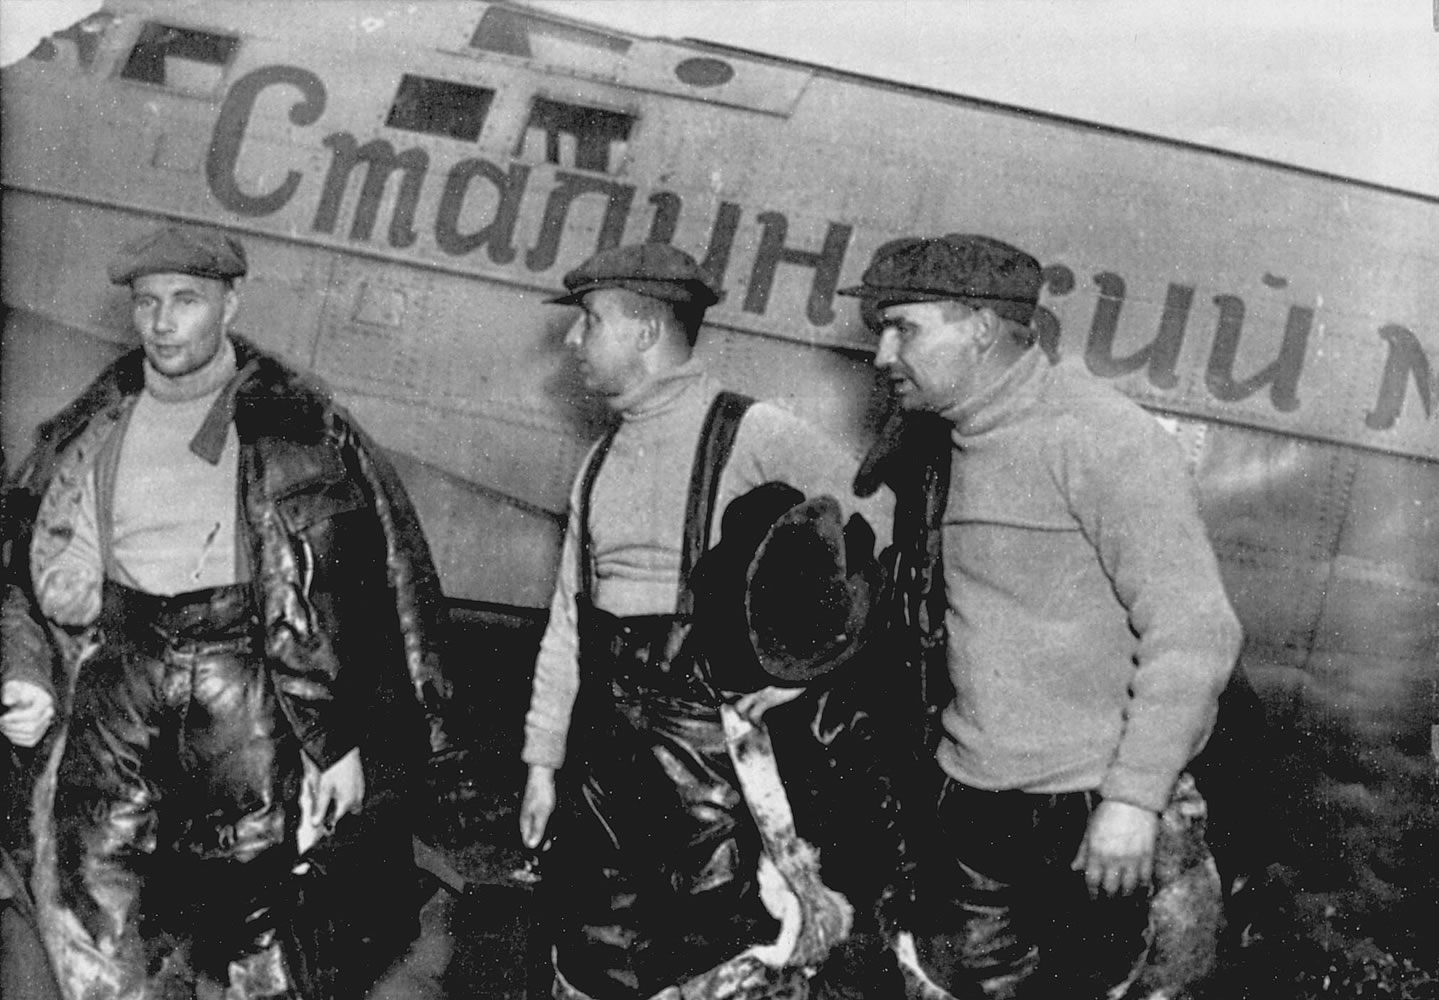 From left, navigator Alexander Belyakov, co-pilot Georgiy Baidukov and pilot Valery Chkalov stand by their plane on June 20, 1937.